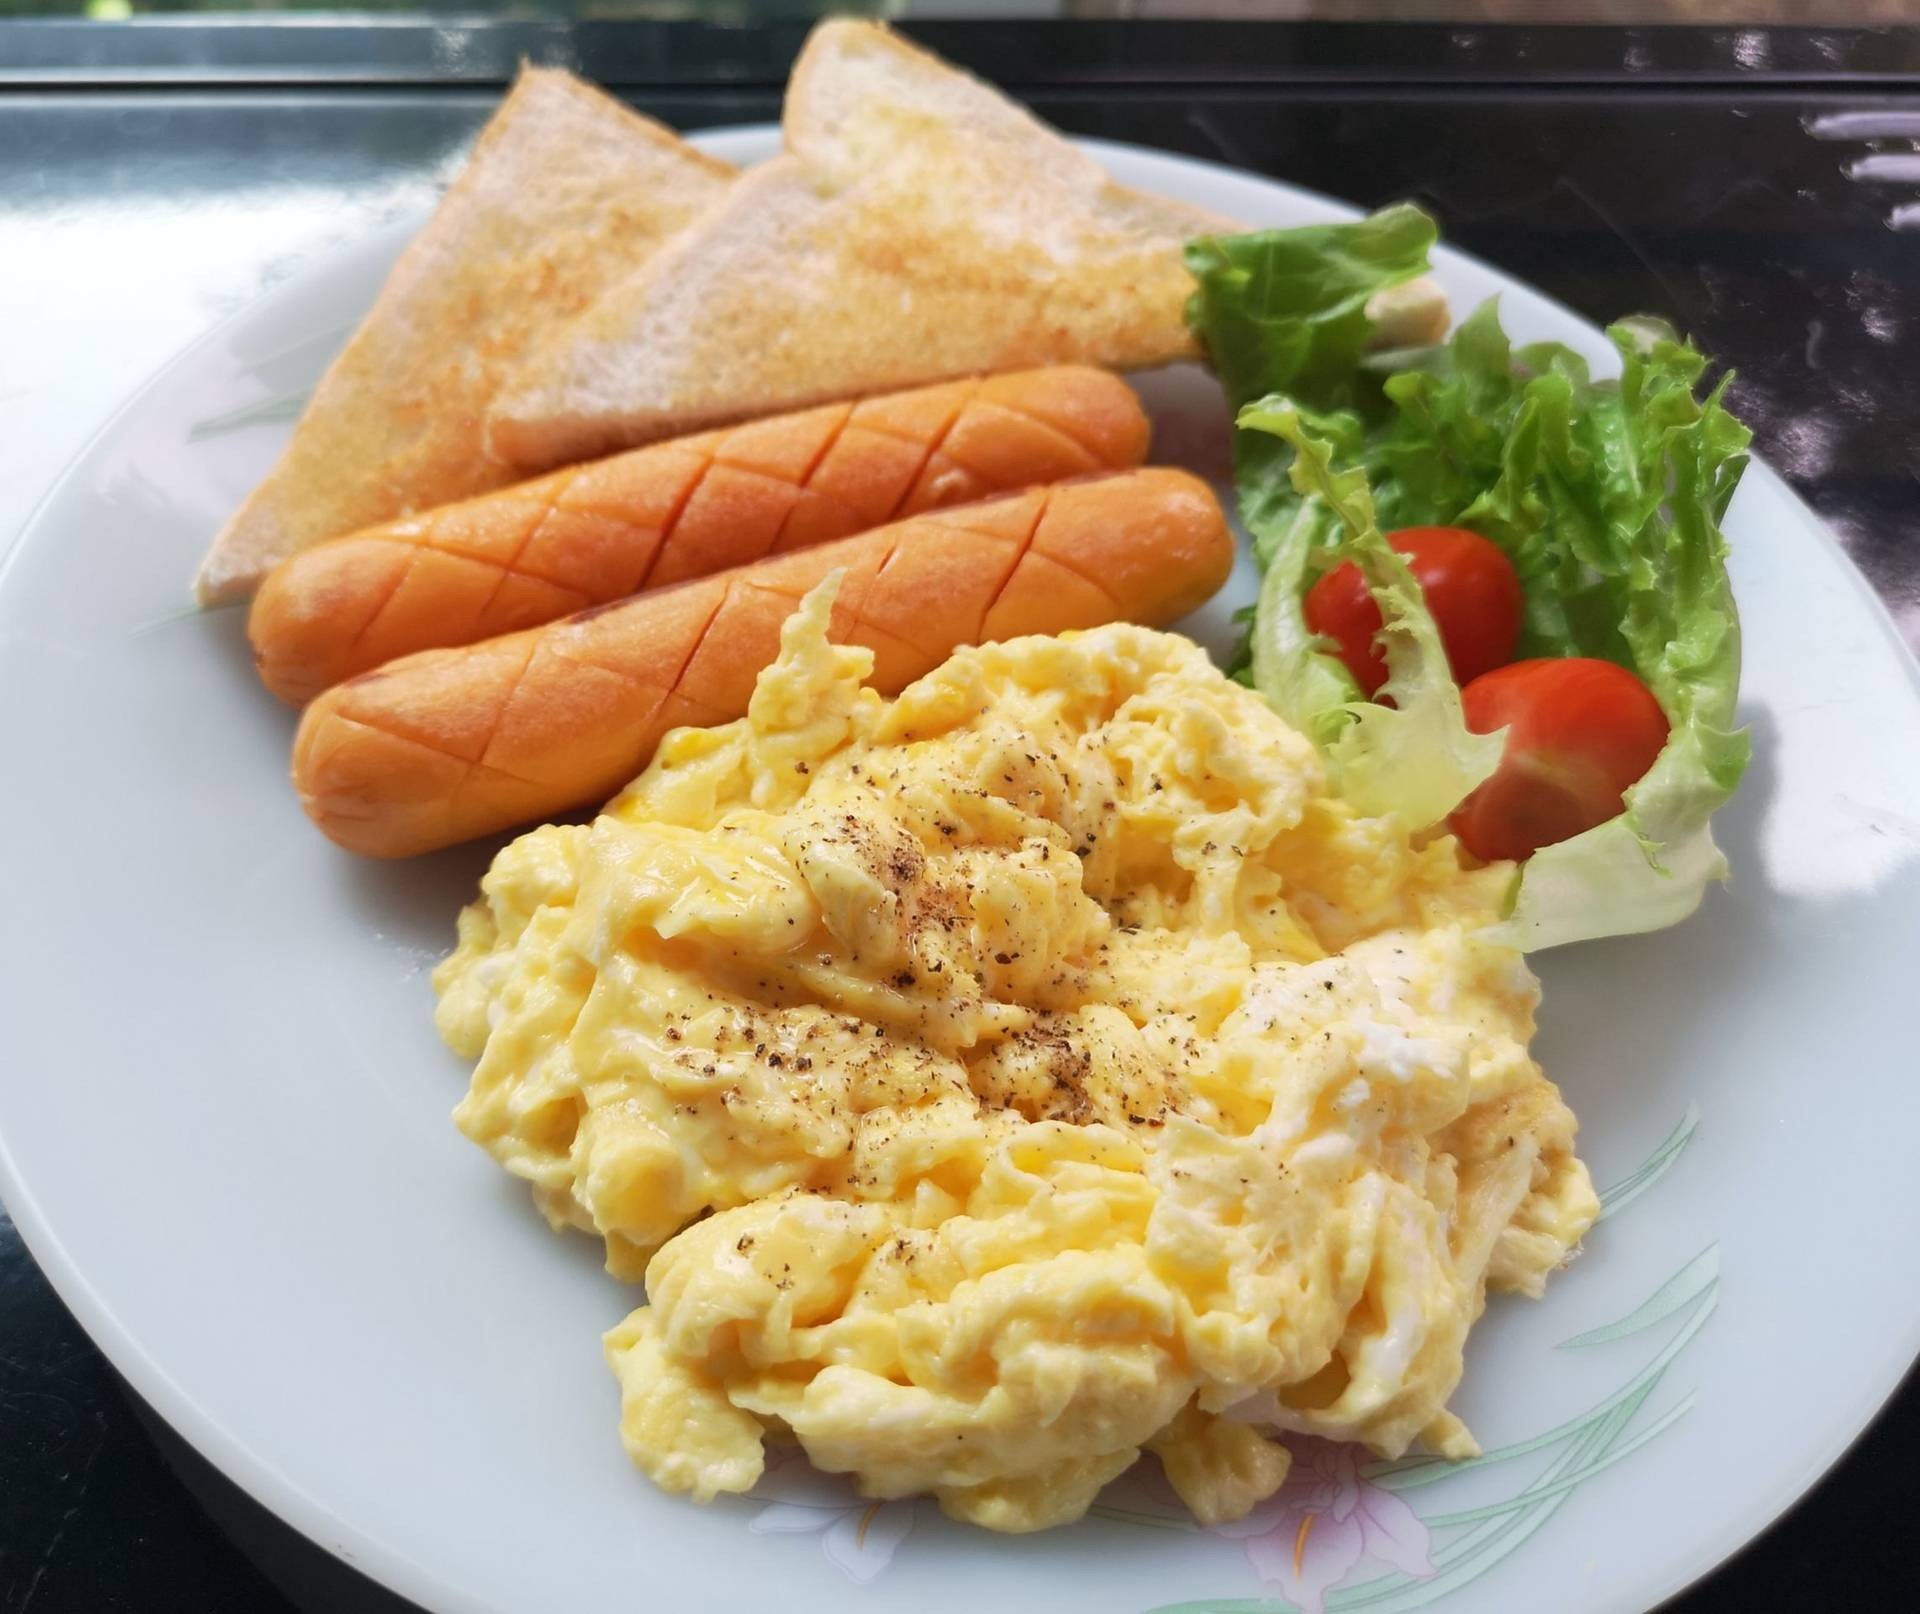 สูตร อาหารเช้าไข่คนไส้กรอกขนมปัง พร้อมวิธีทำโดย Sangsunee Chaiudchara